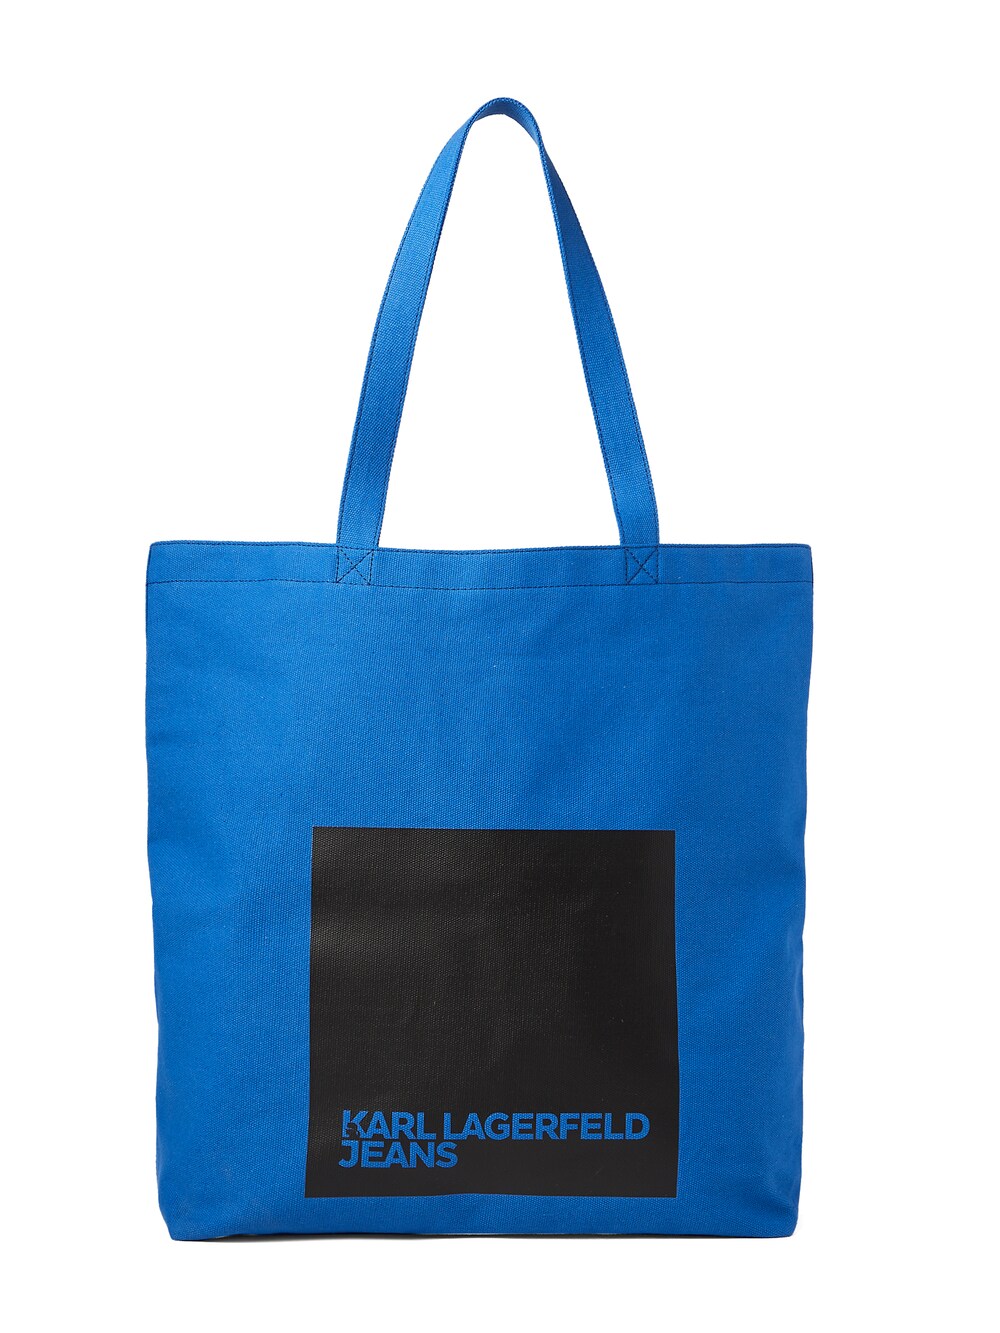 бермуды karl lagerfeld размер 50 синий Сумка-шоппер KARL LAGERFELD JEANS, синий